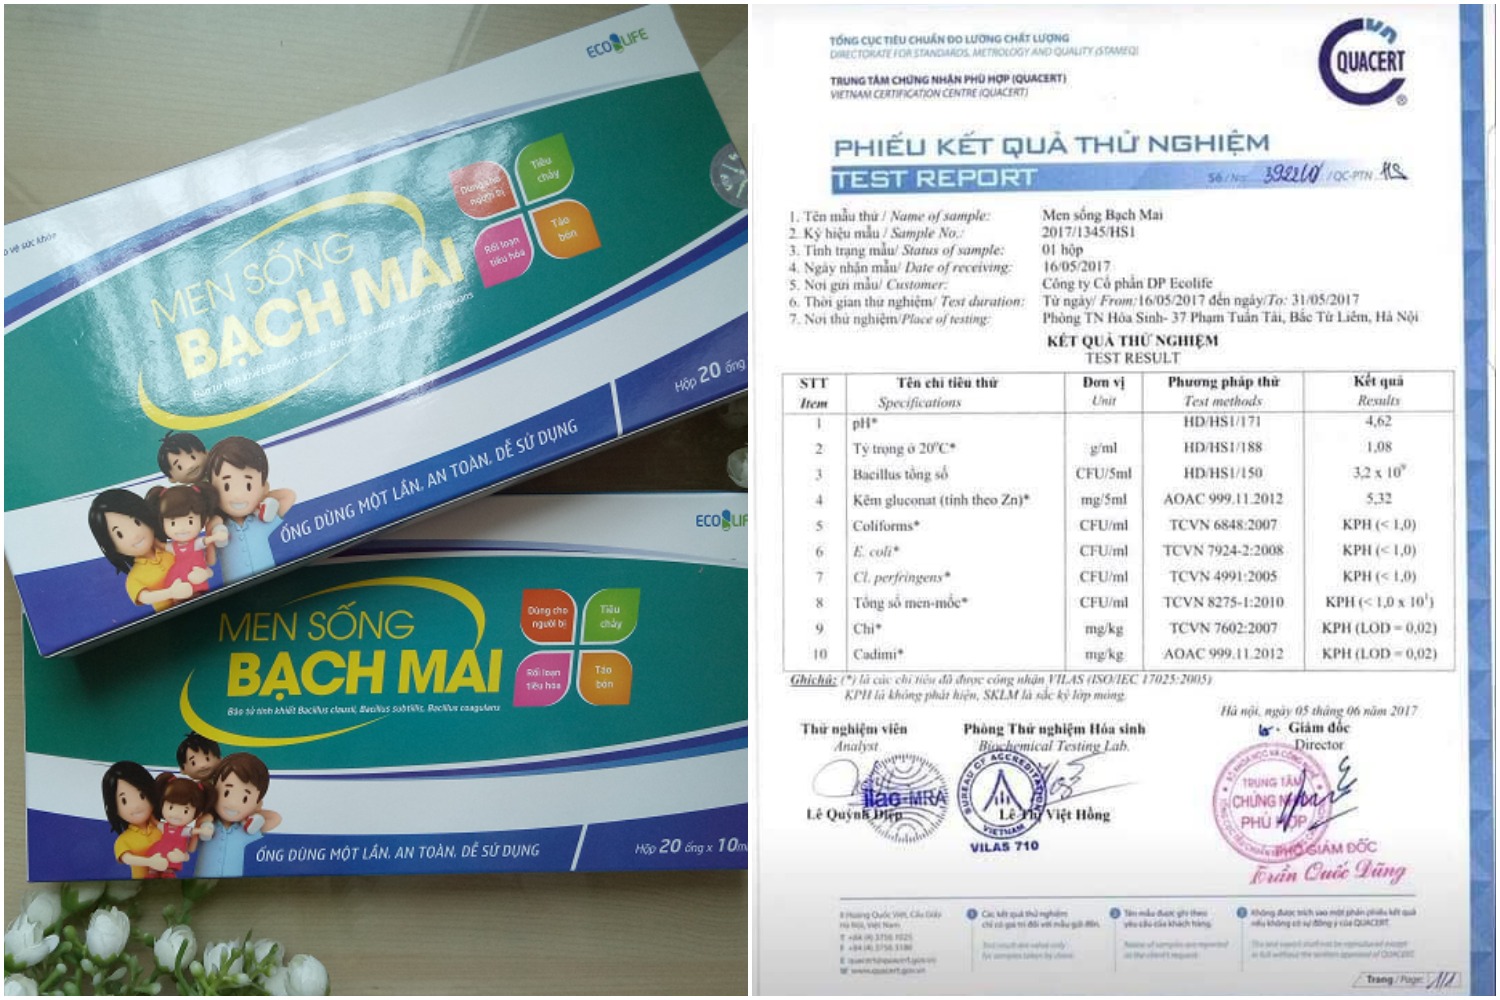 Men sống Bạch Mai có đầy đủ giấy tờ chứng nhận của Bộ Y tế